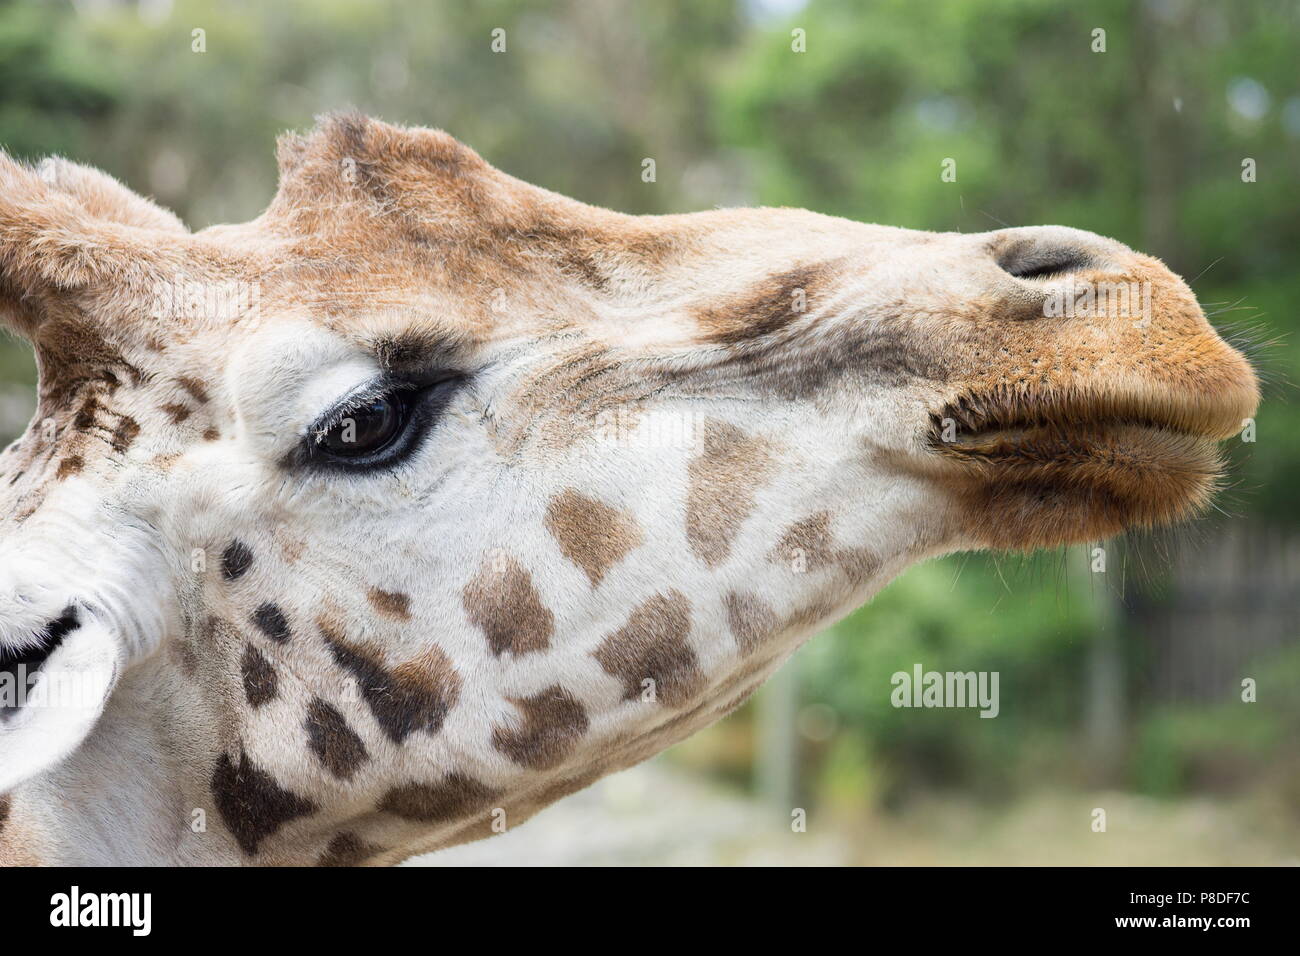 Close up portrait libre d'une girafe portrait head shot. Banque D'Images